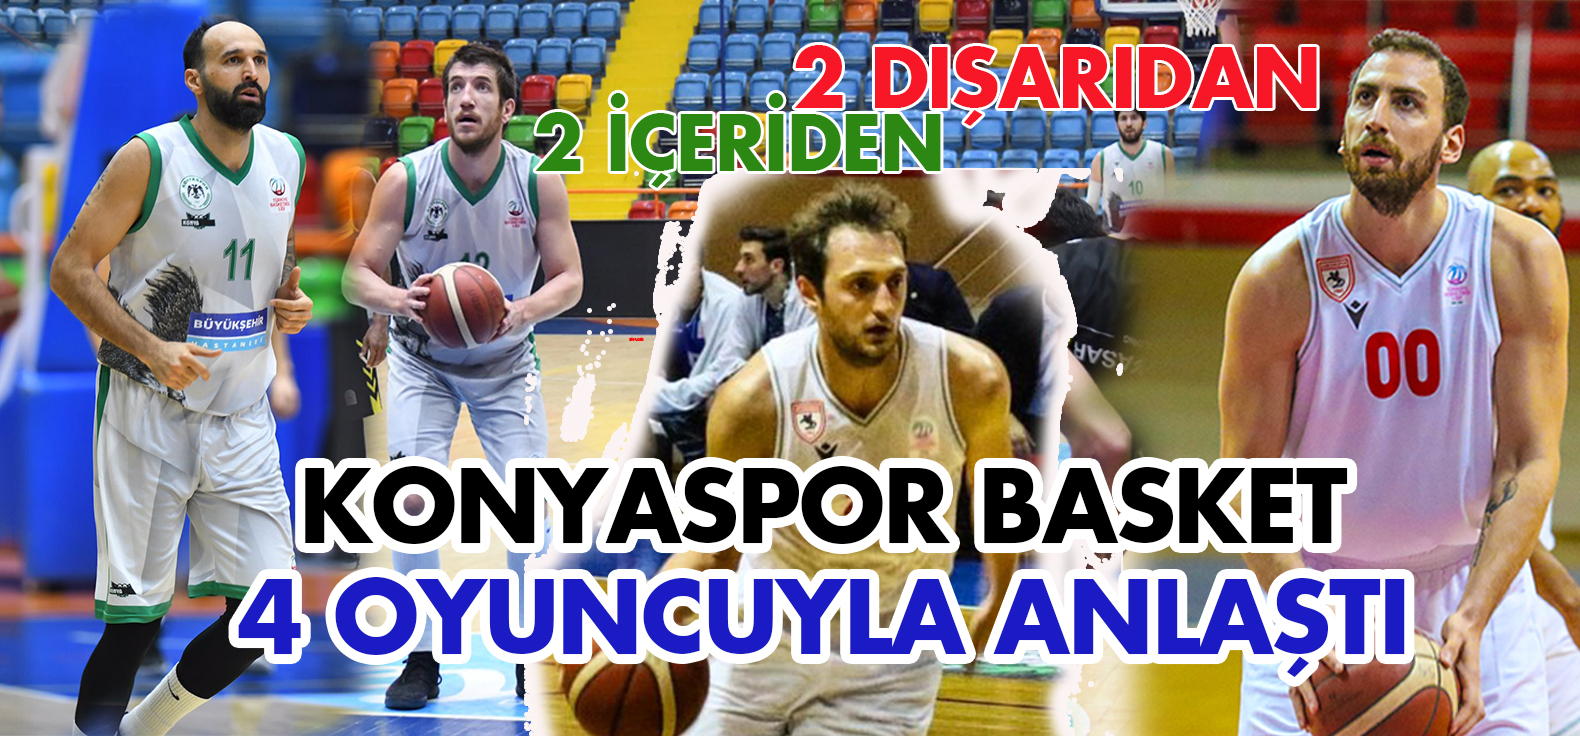 Konyaspor Basketbol 4 oyuncuyla anlaştı